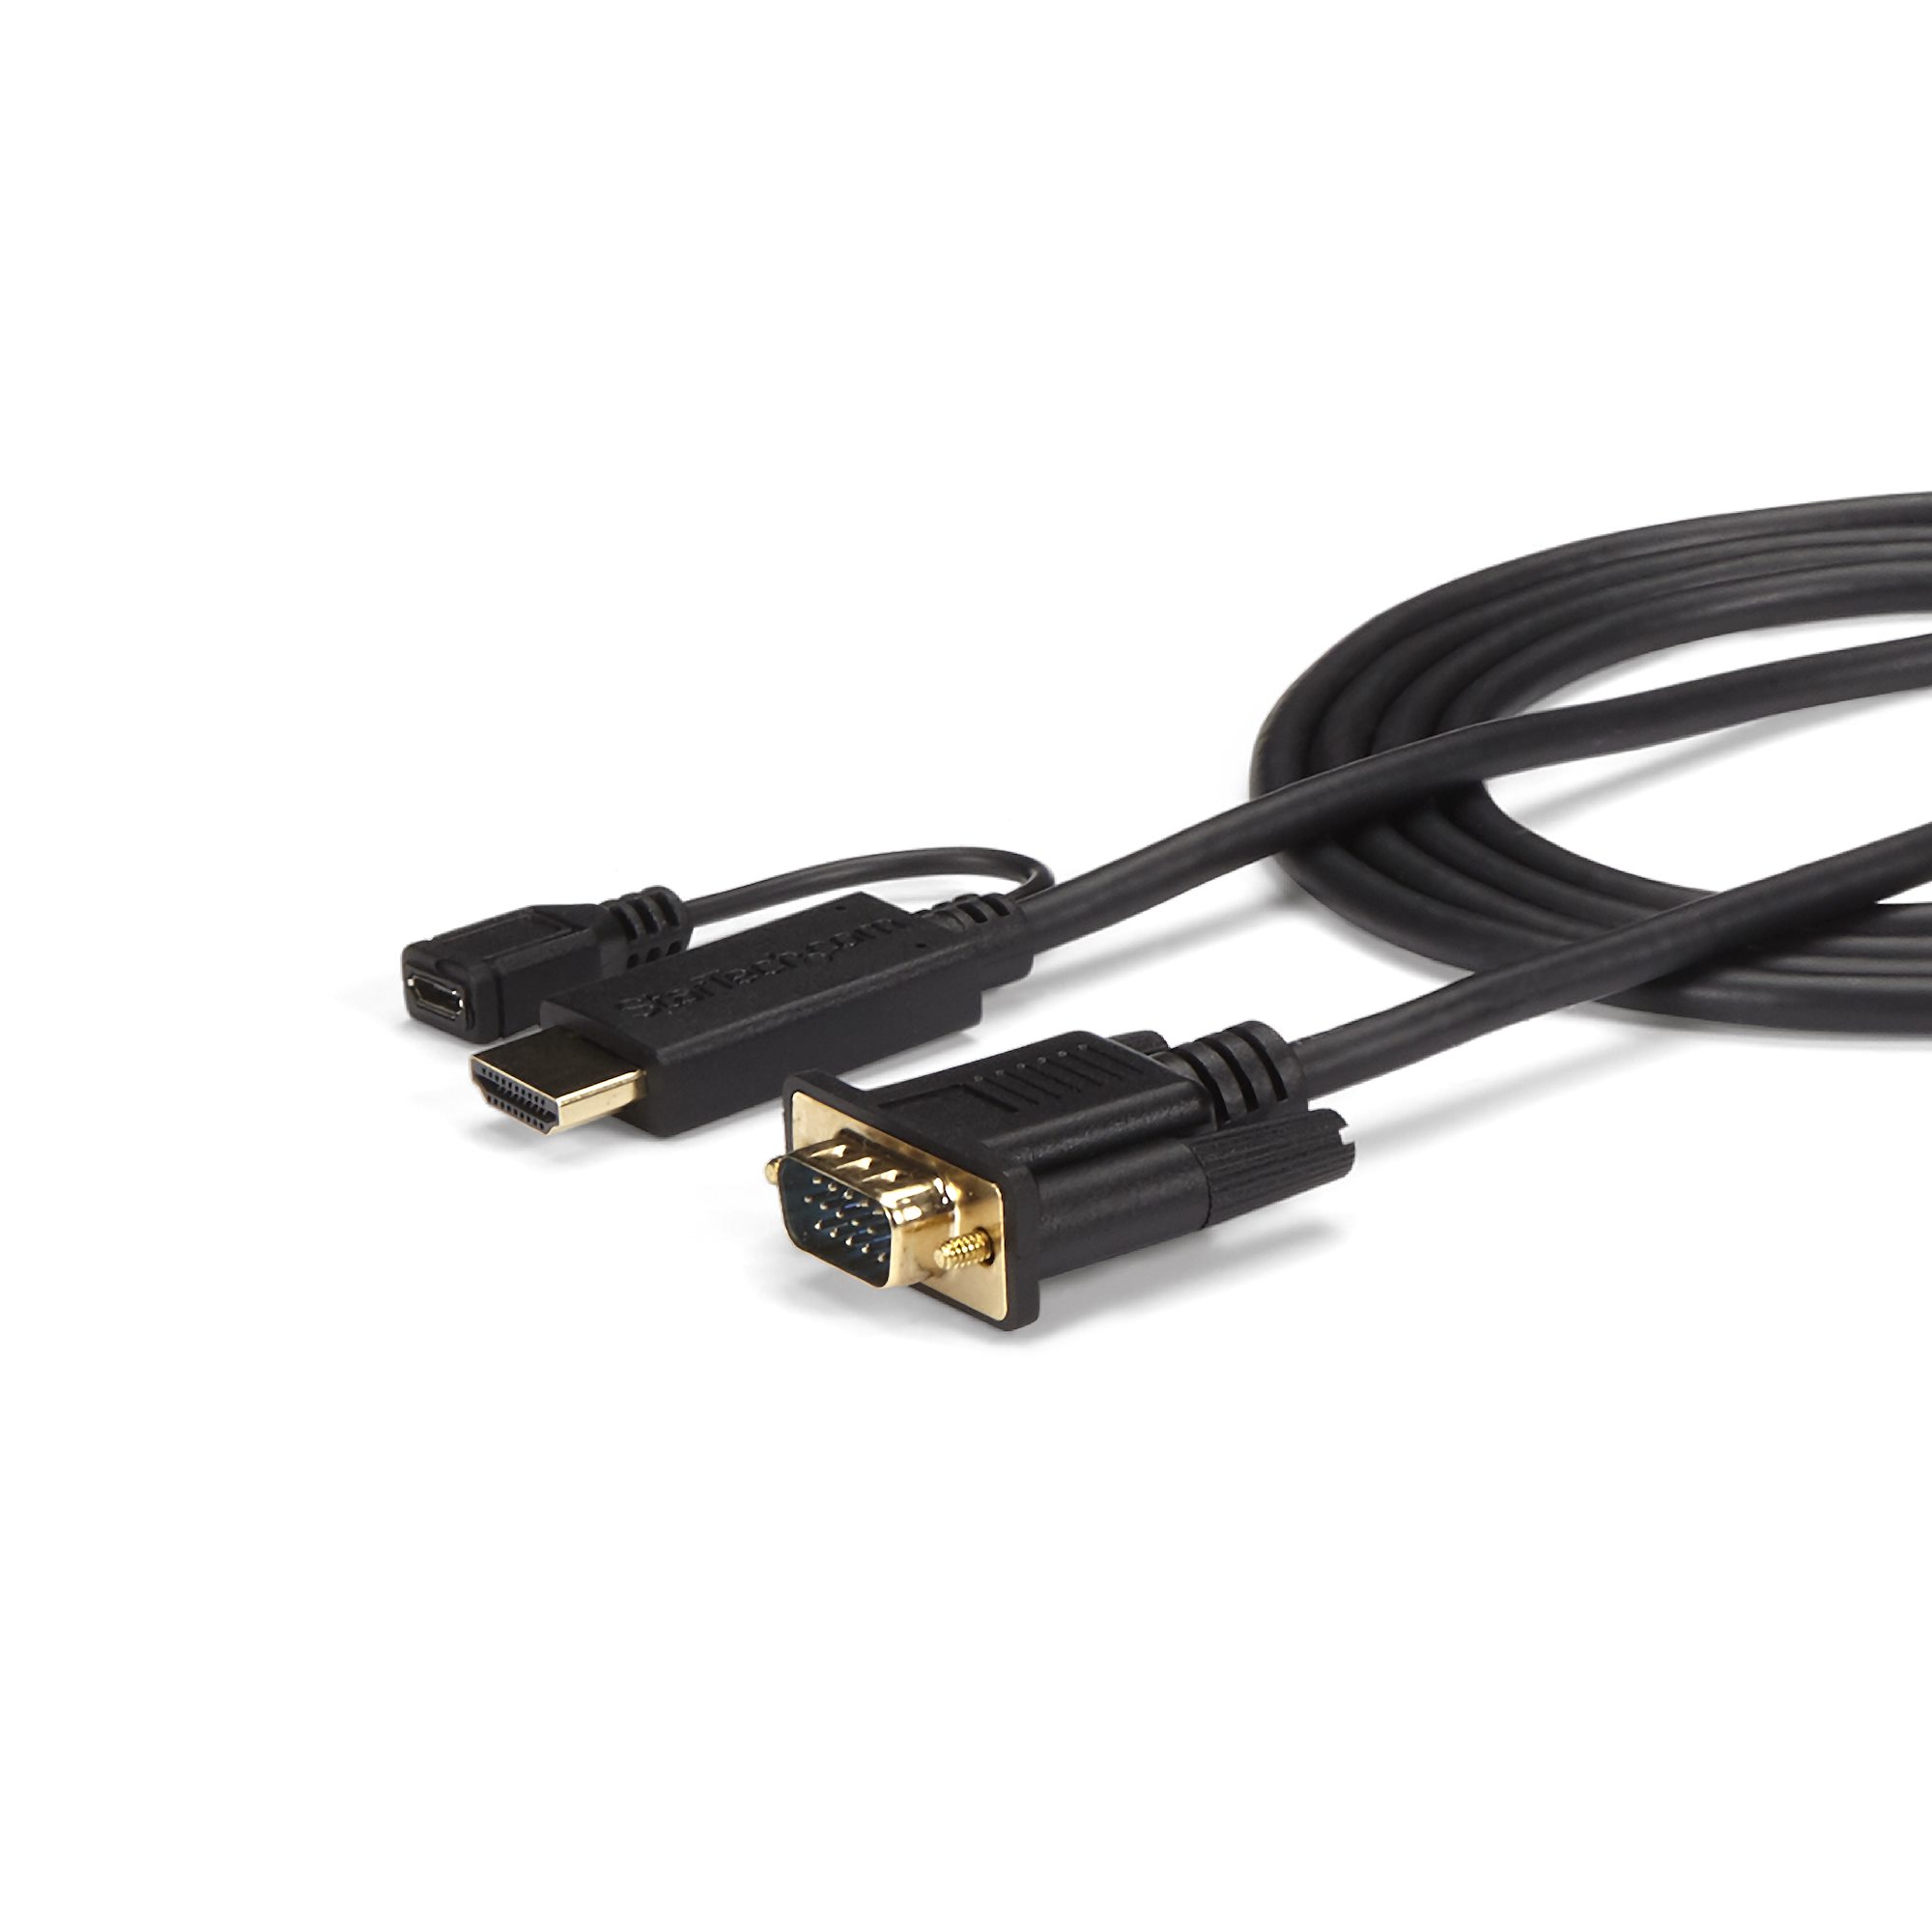 HDMI - VGAアクティブ変換ケーブルアダプタ 91cm オス/オス - HDMI® ＆ DVI ビデオアダプタ  日本